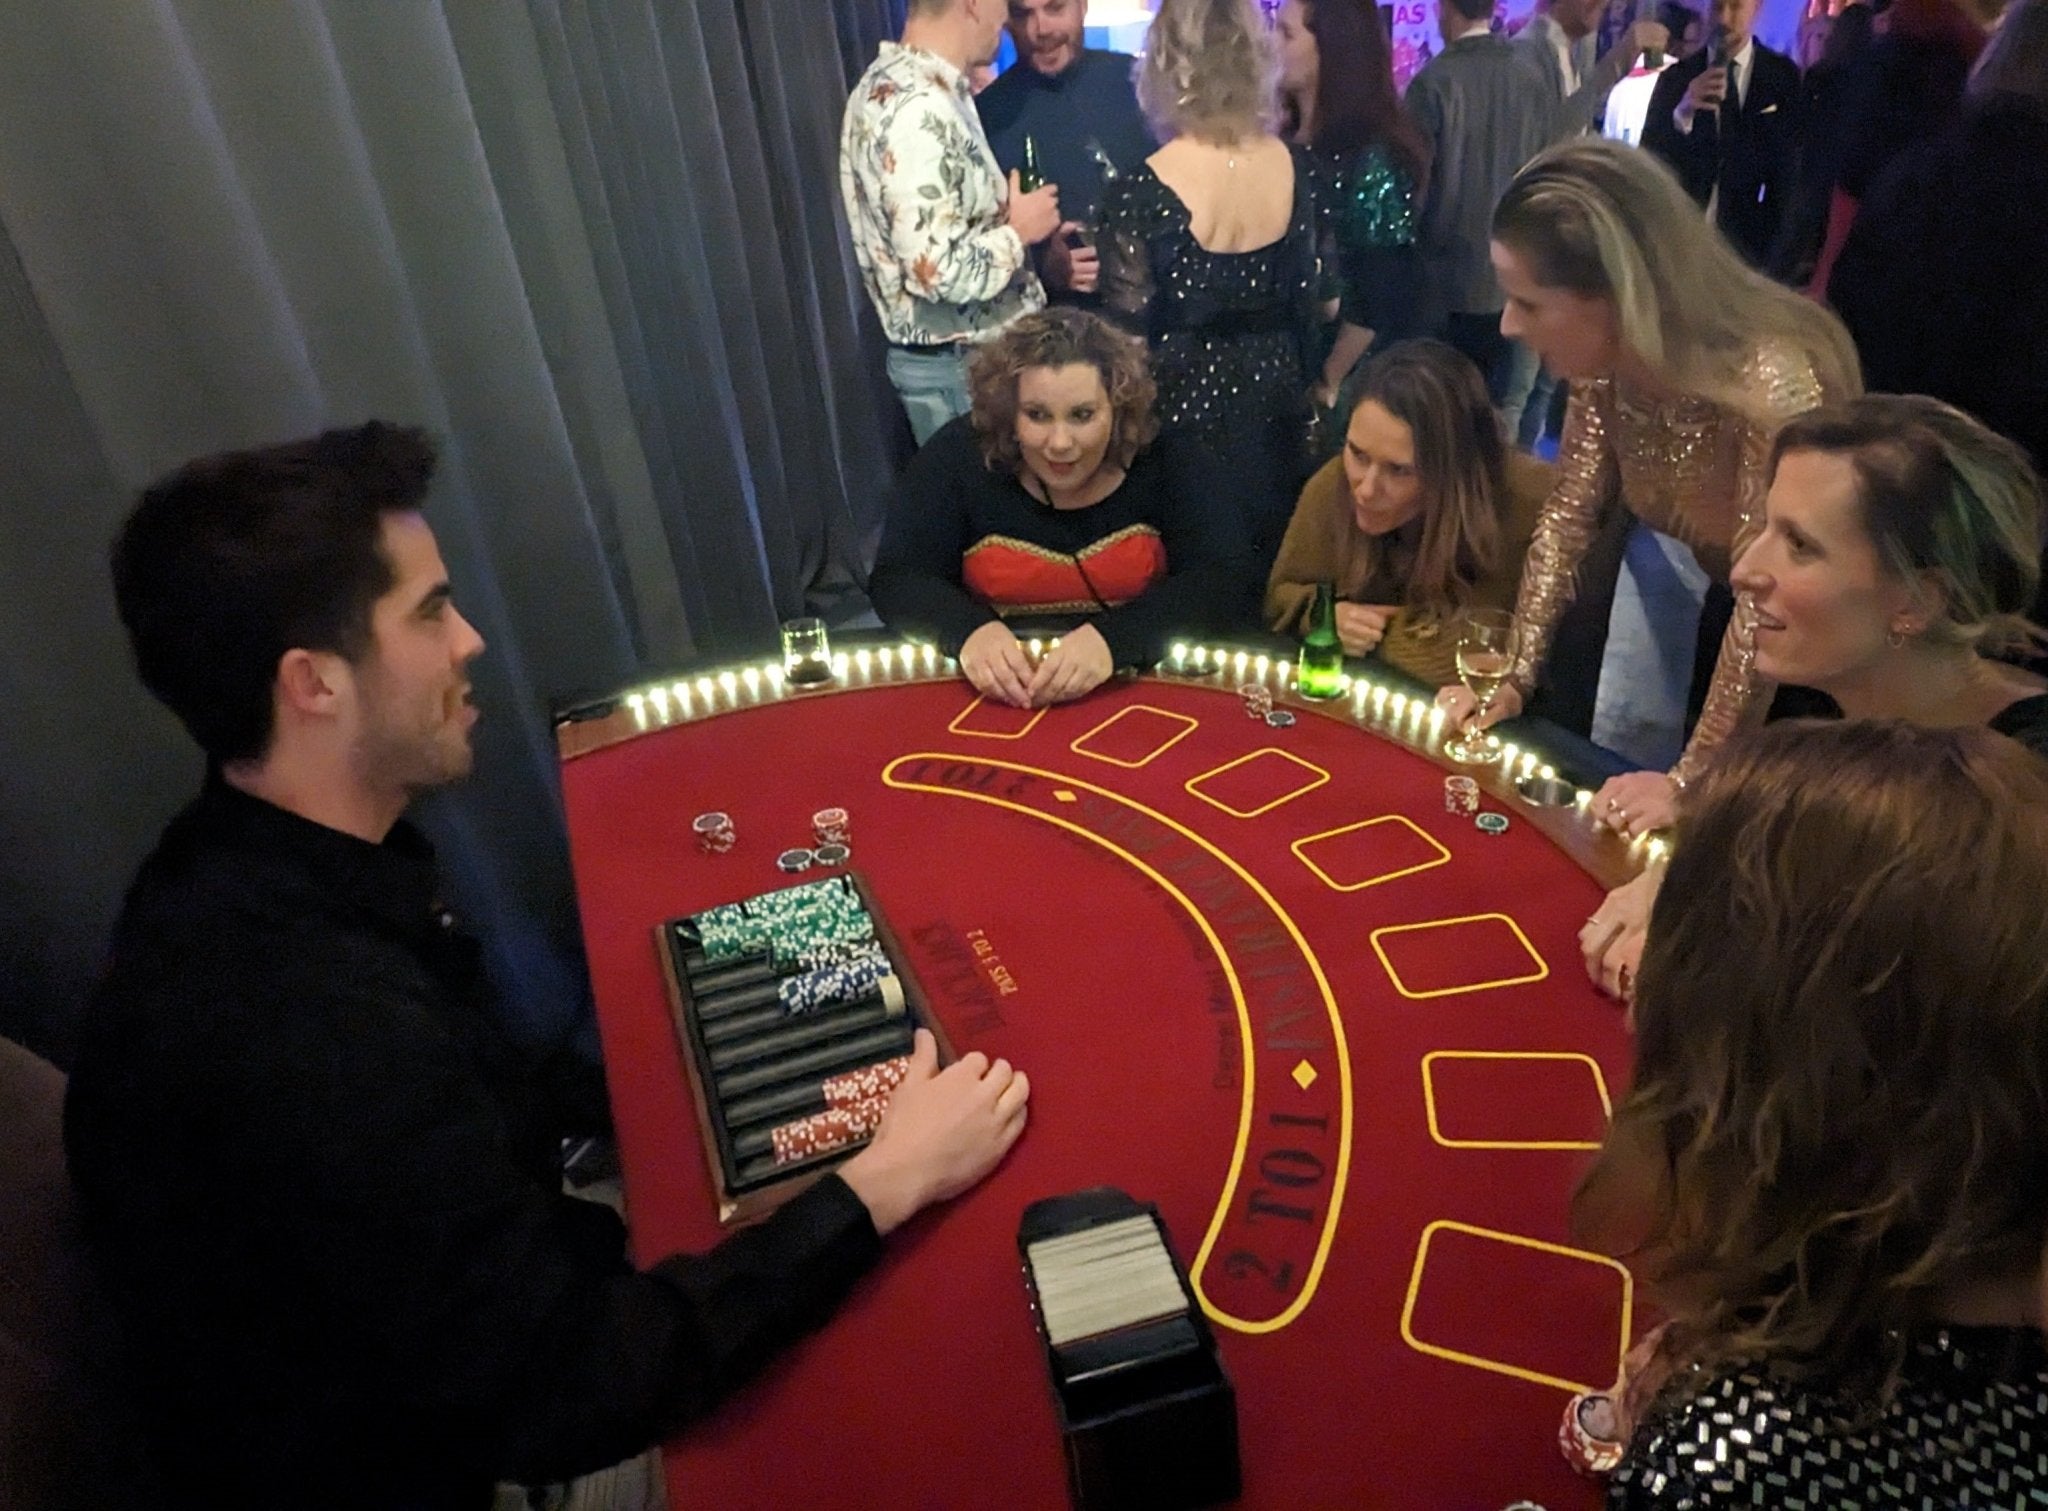 Royal casino experience: Casino op locatie - Uitjesthuis